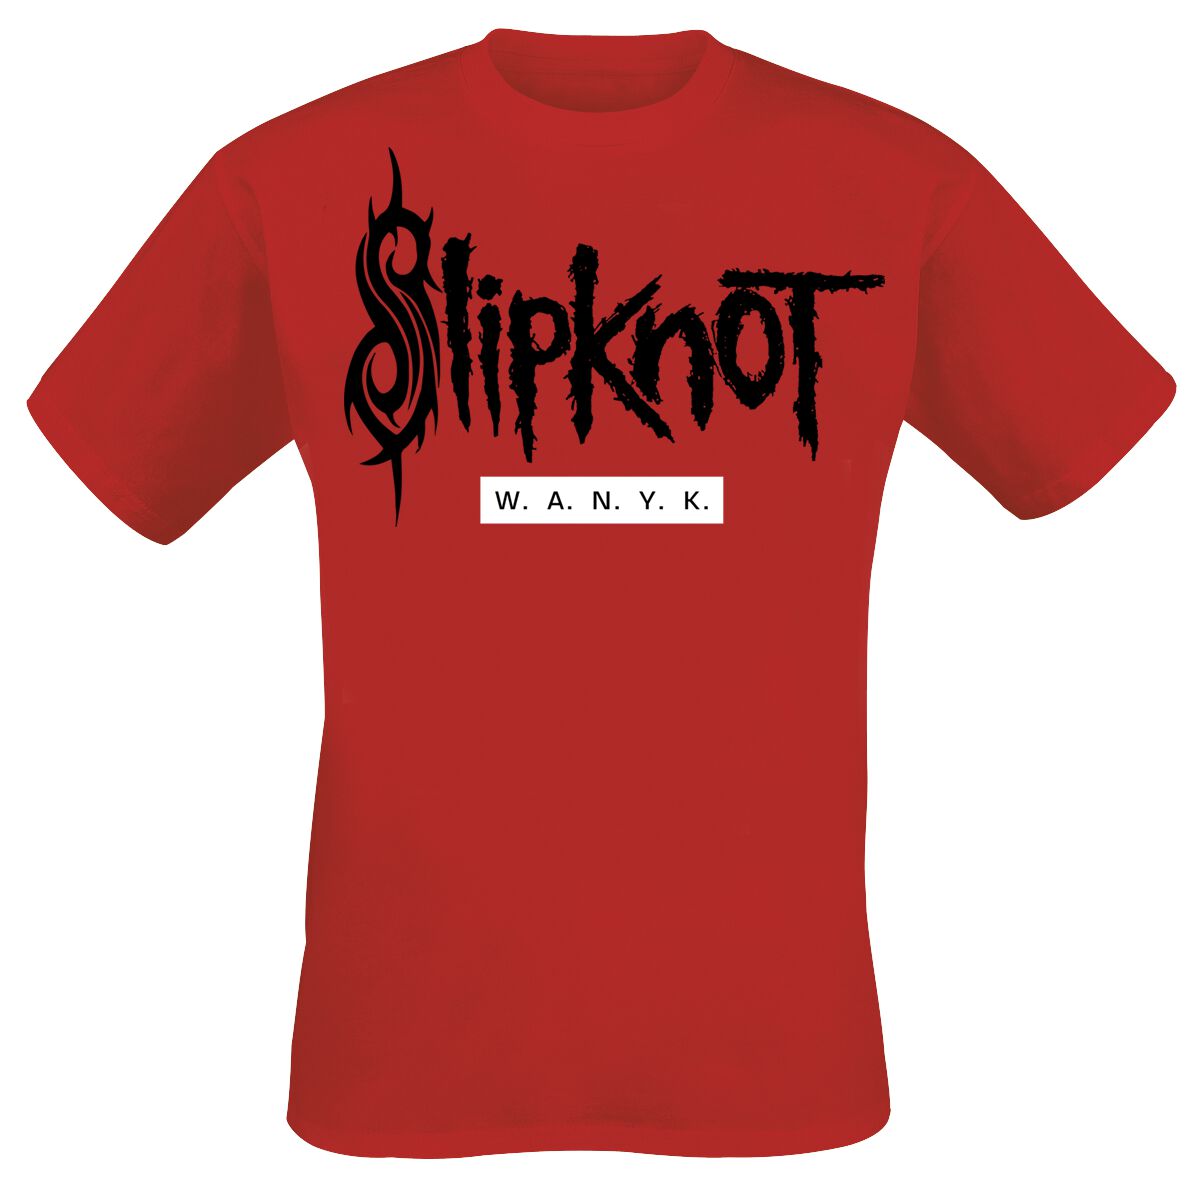 Slipknot T-Shirt - We Are Not Your Kind - M bis 5XL - für Männer - Größe 3XL - rot  - EMP exklusives Merchandise!